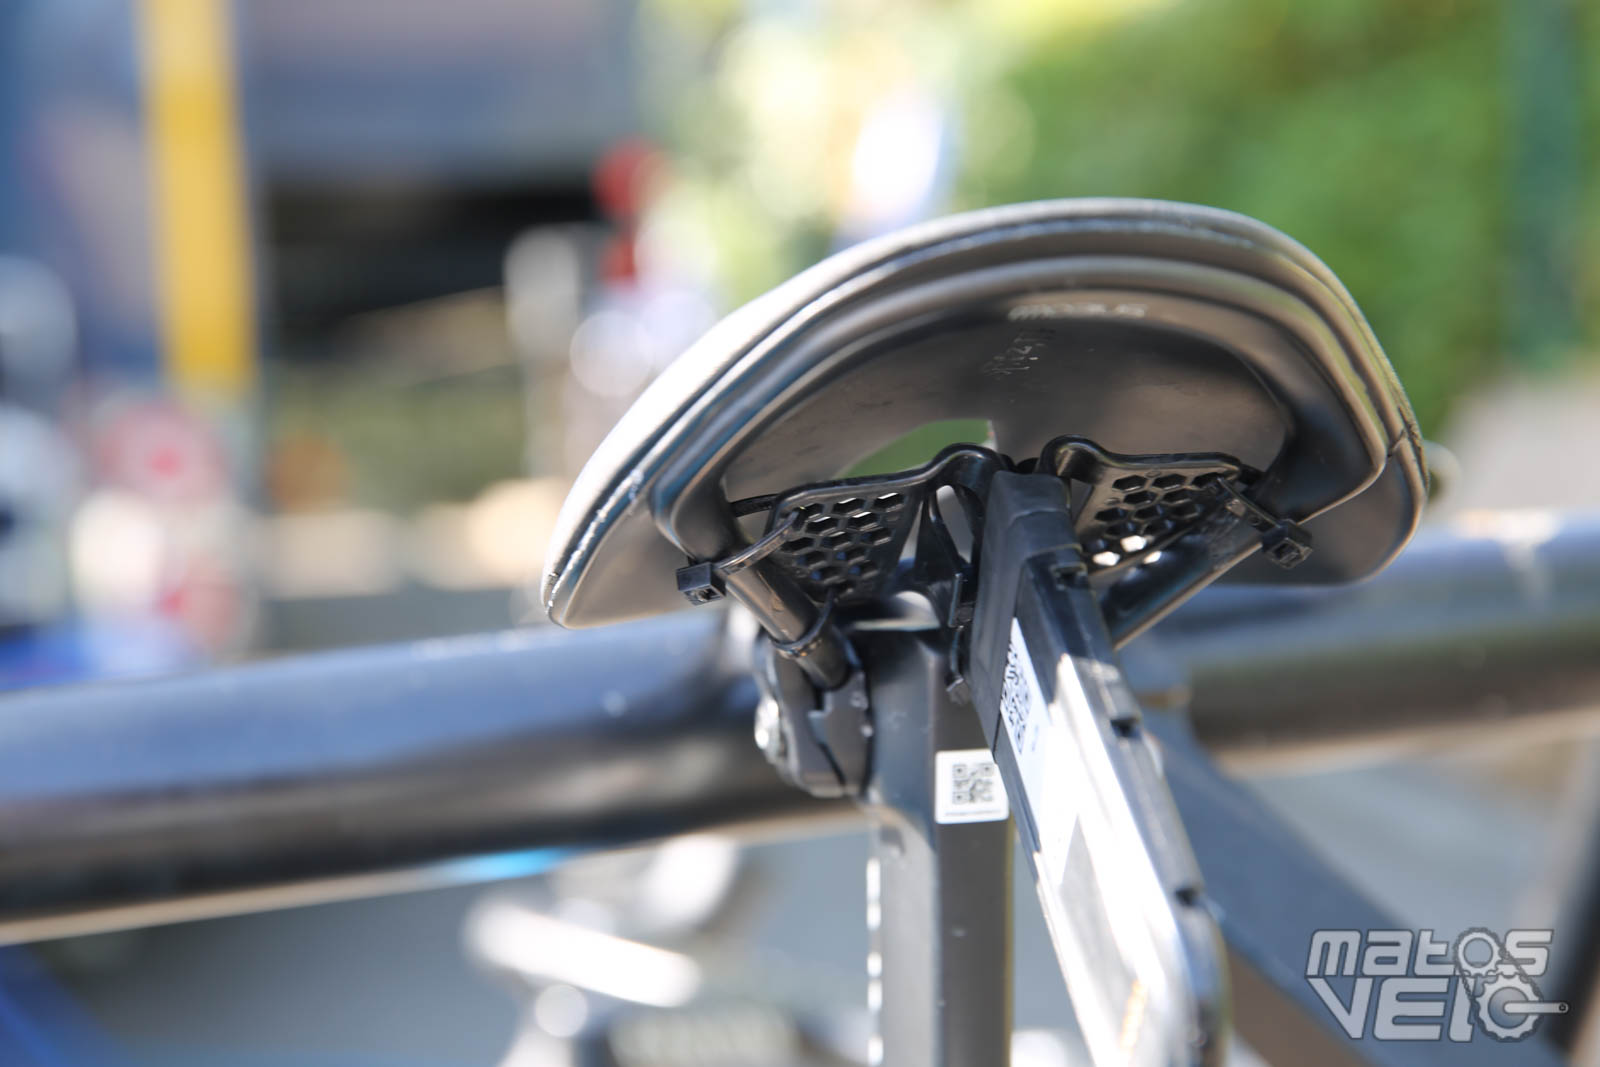 Le surfaçage des supports de freins à disques, passage obligé pour les  mécanos pros - Matos vélo, actualités vélo de route et tests de matériel  cyclisme